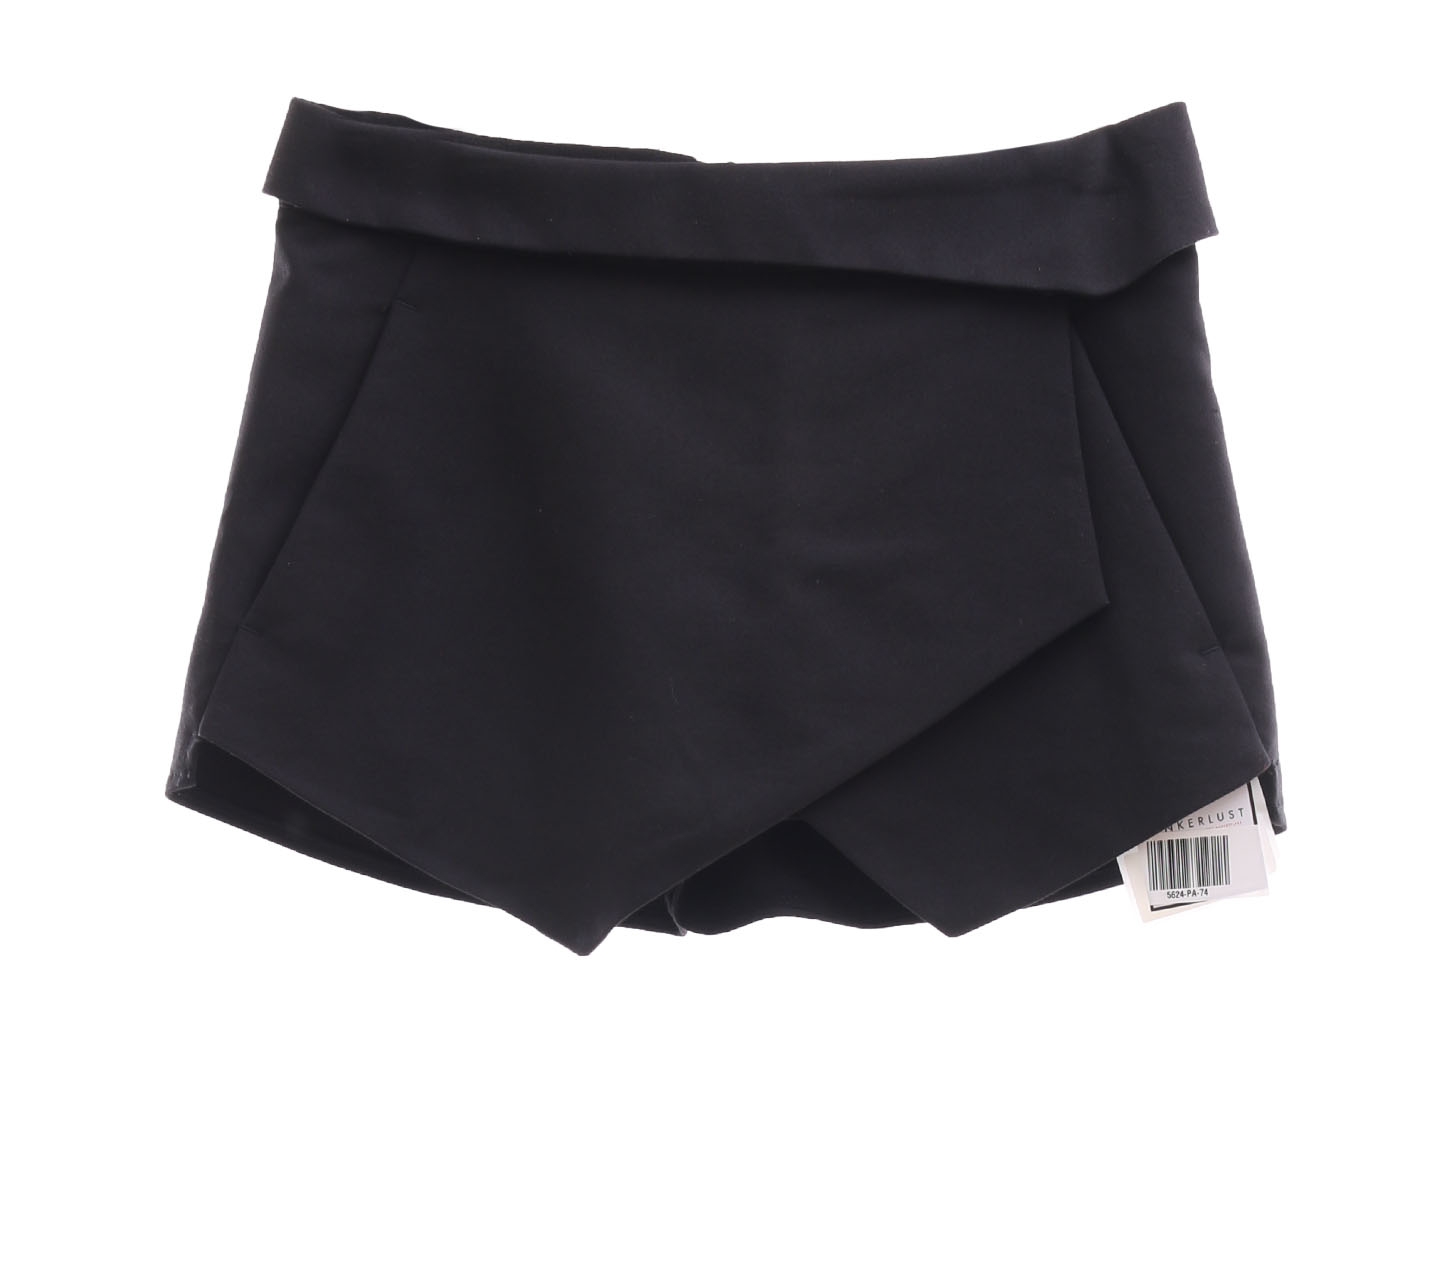 Zara Black Skort Short Pants